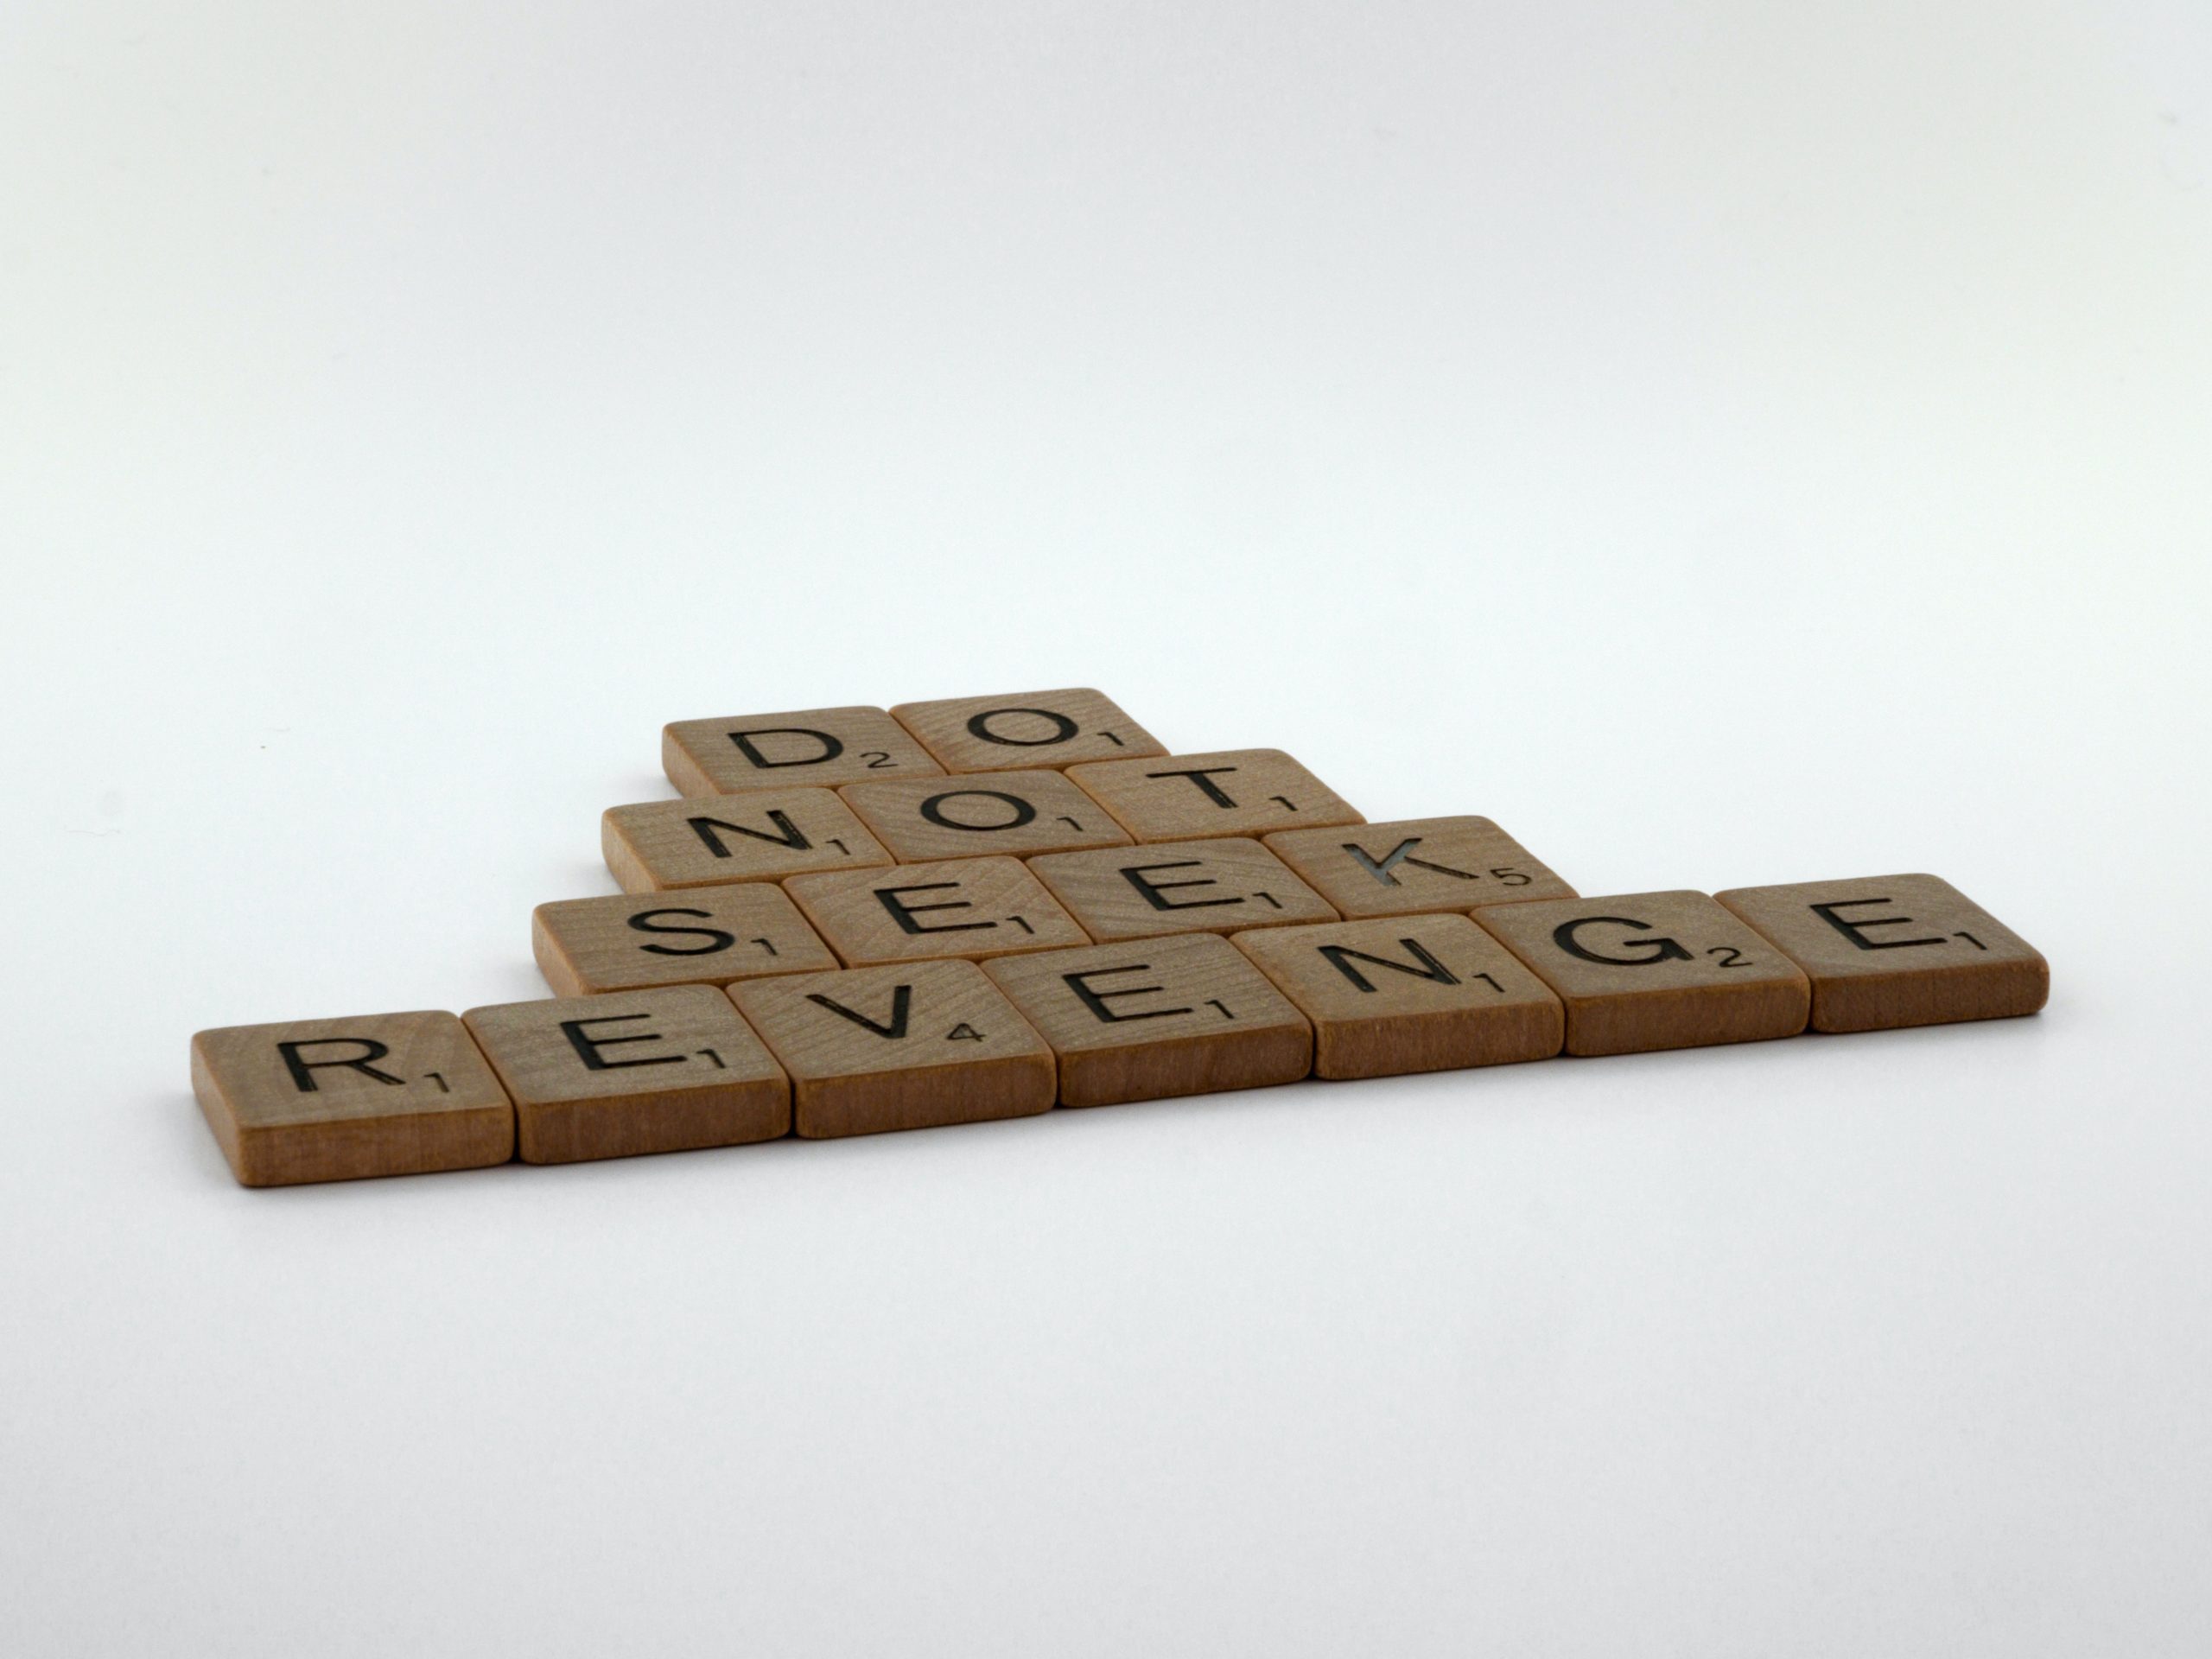 Some wooden Scrabble tiles spell out, "Do not seek revenge."